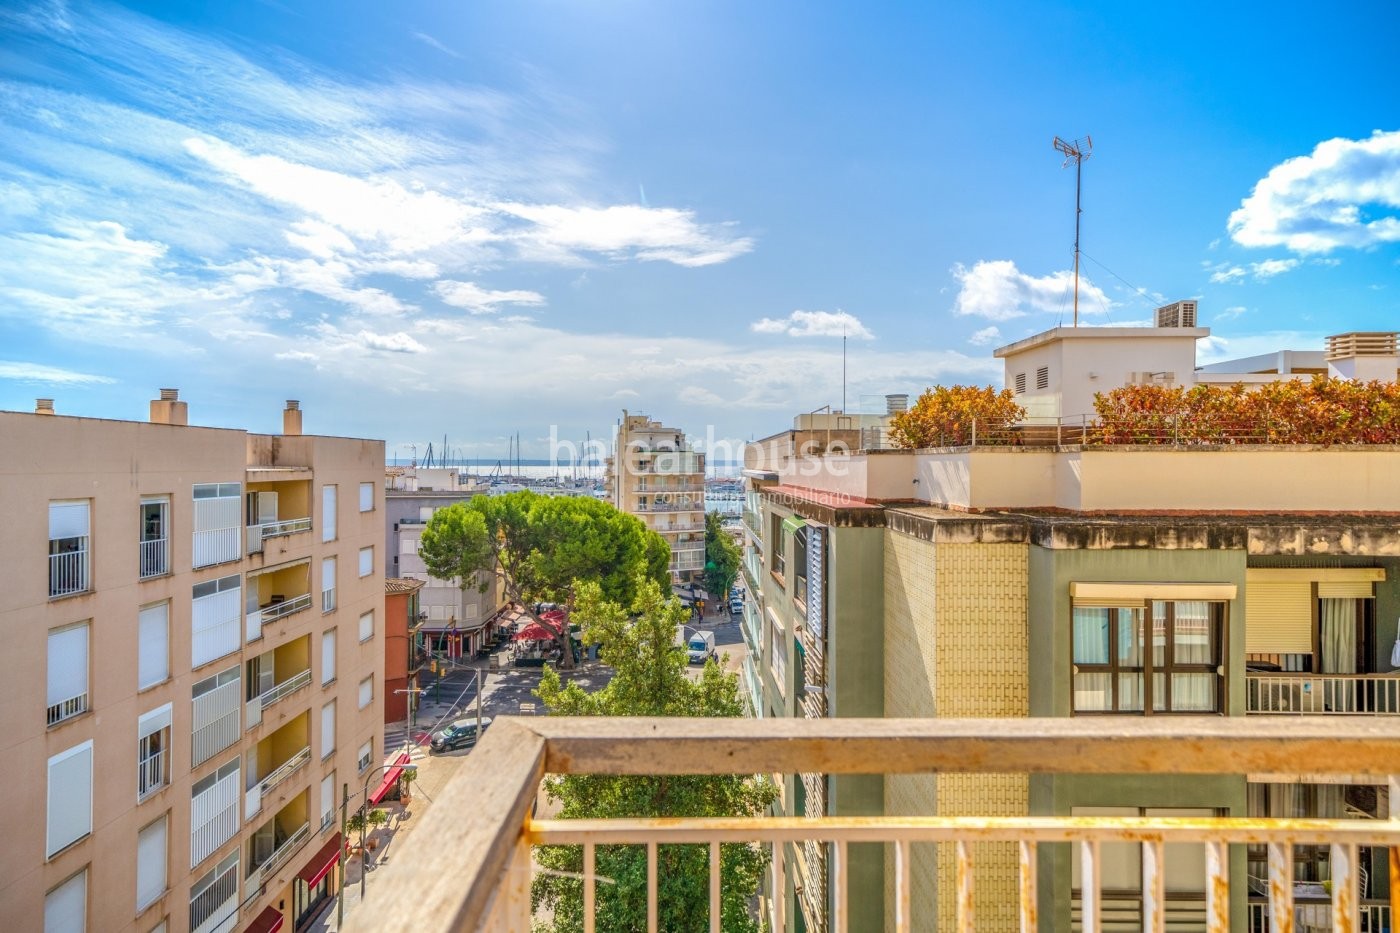 Fantástico piso en el centro de Palma con terraza y excelentes vistas despejadas al mar